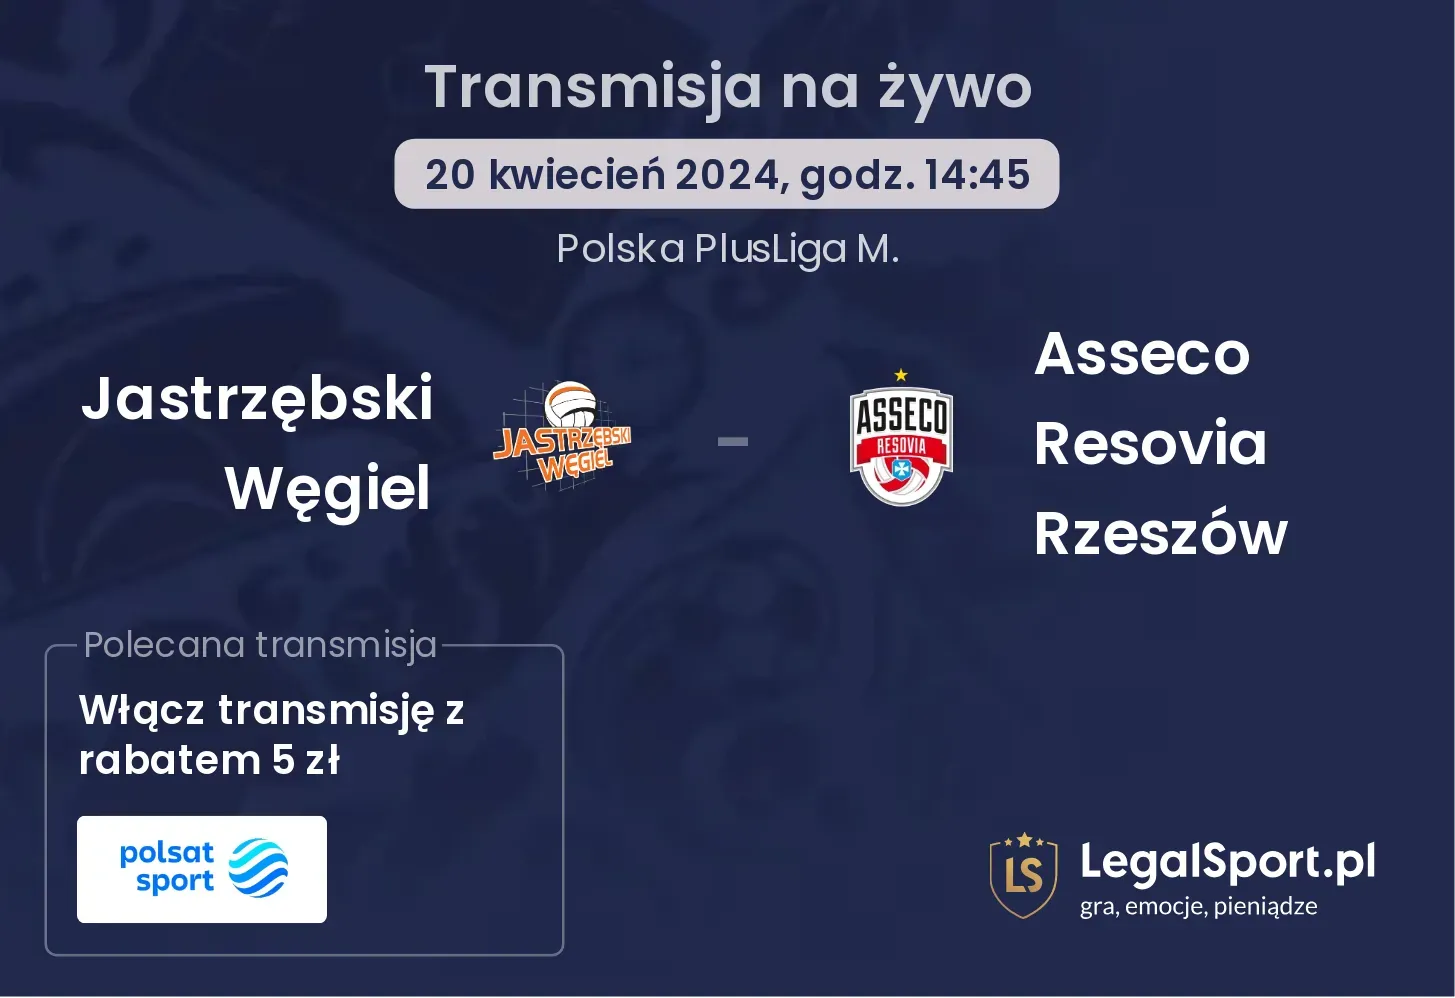 Jastrzębski Węgiel - Asseco Resovia Rzeszów transmisja na żywo